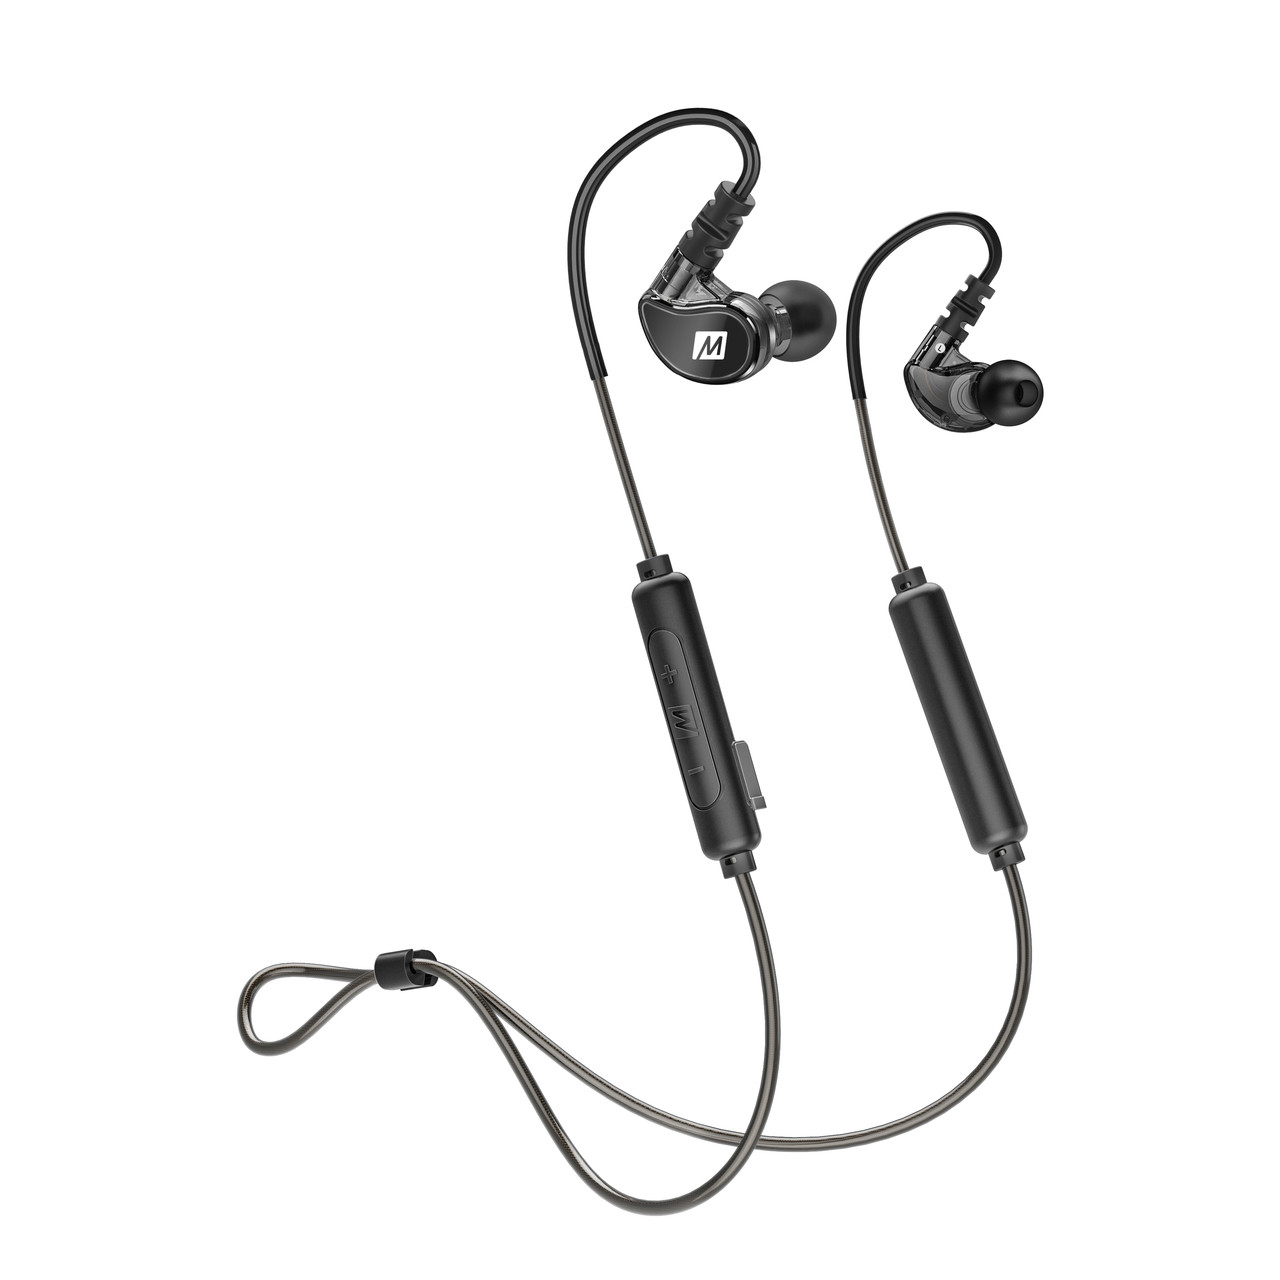 MEE audio X6 Bluetooth Wireless Sports In-Ear Headset